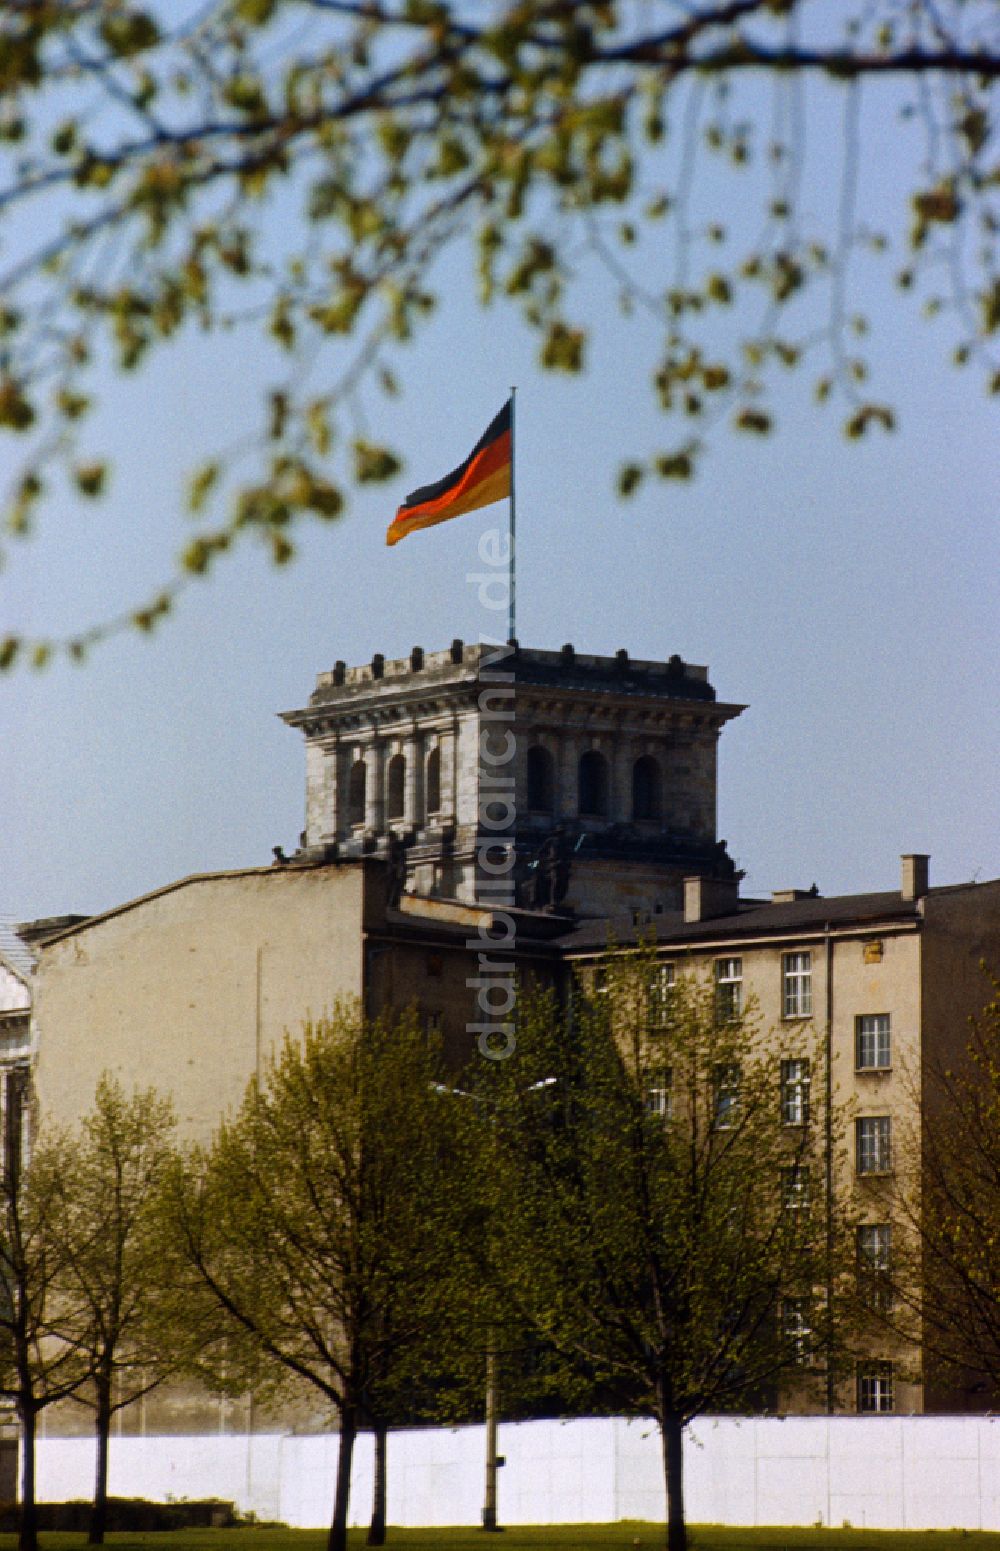 DDR-Bildarchiv: Berlin - Blick über die Mauer in Richtung Reichstag mit Turm und Deutschland Flagge in Ostberlin in der DDR